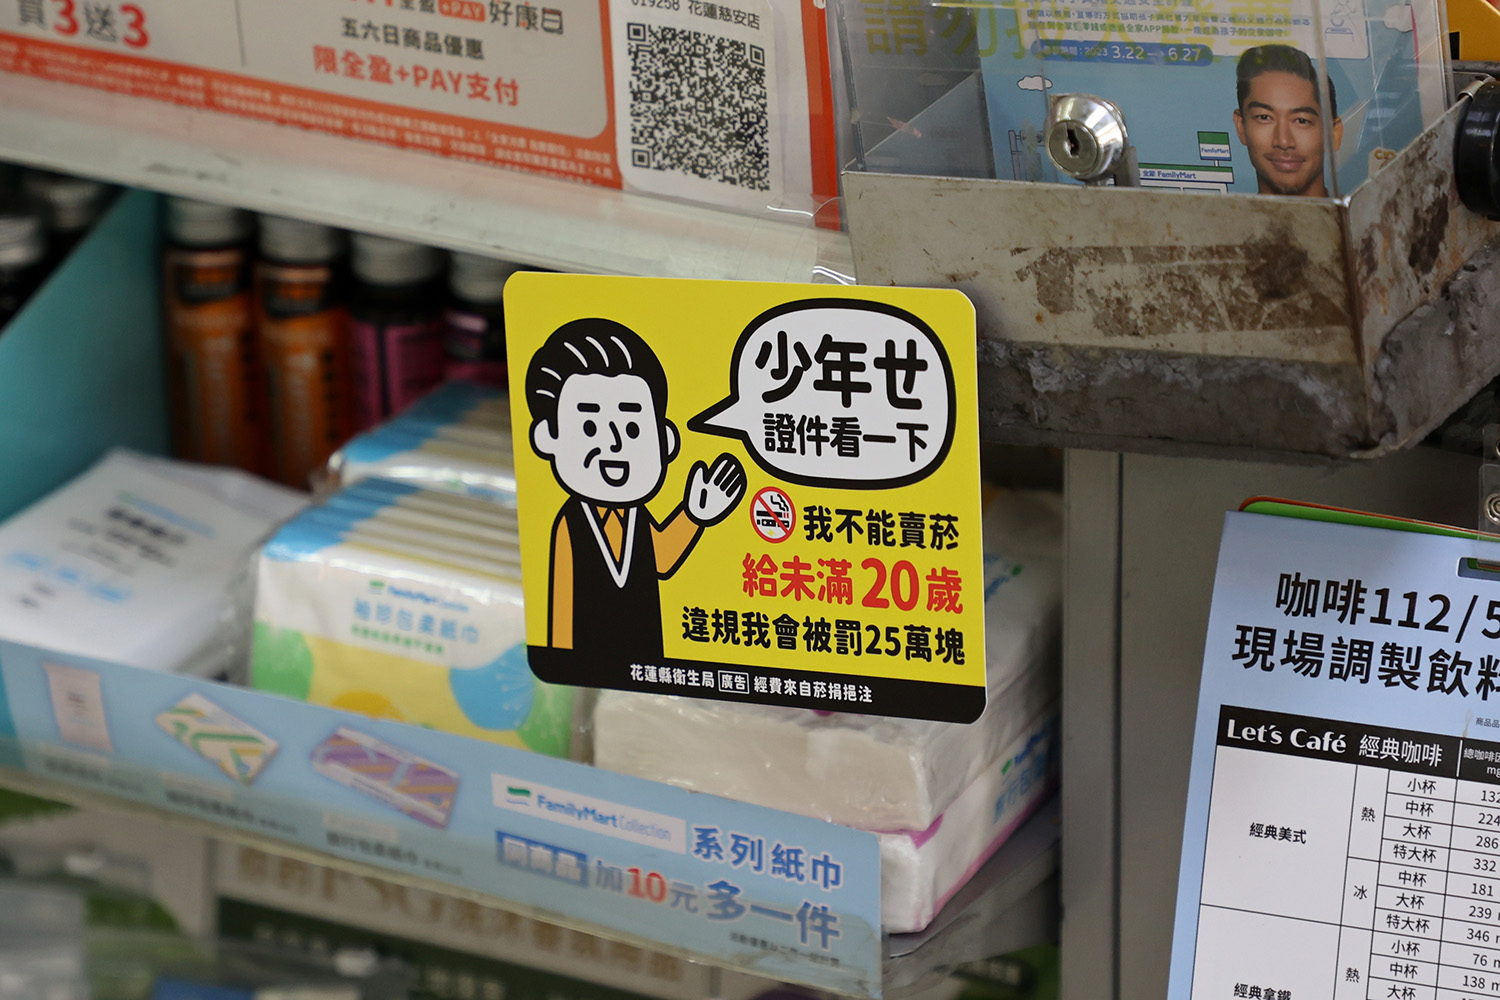 店家將最新宣導小卡貼在櫃台旁，提醒顧客買菸時務必出示年齡證明。